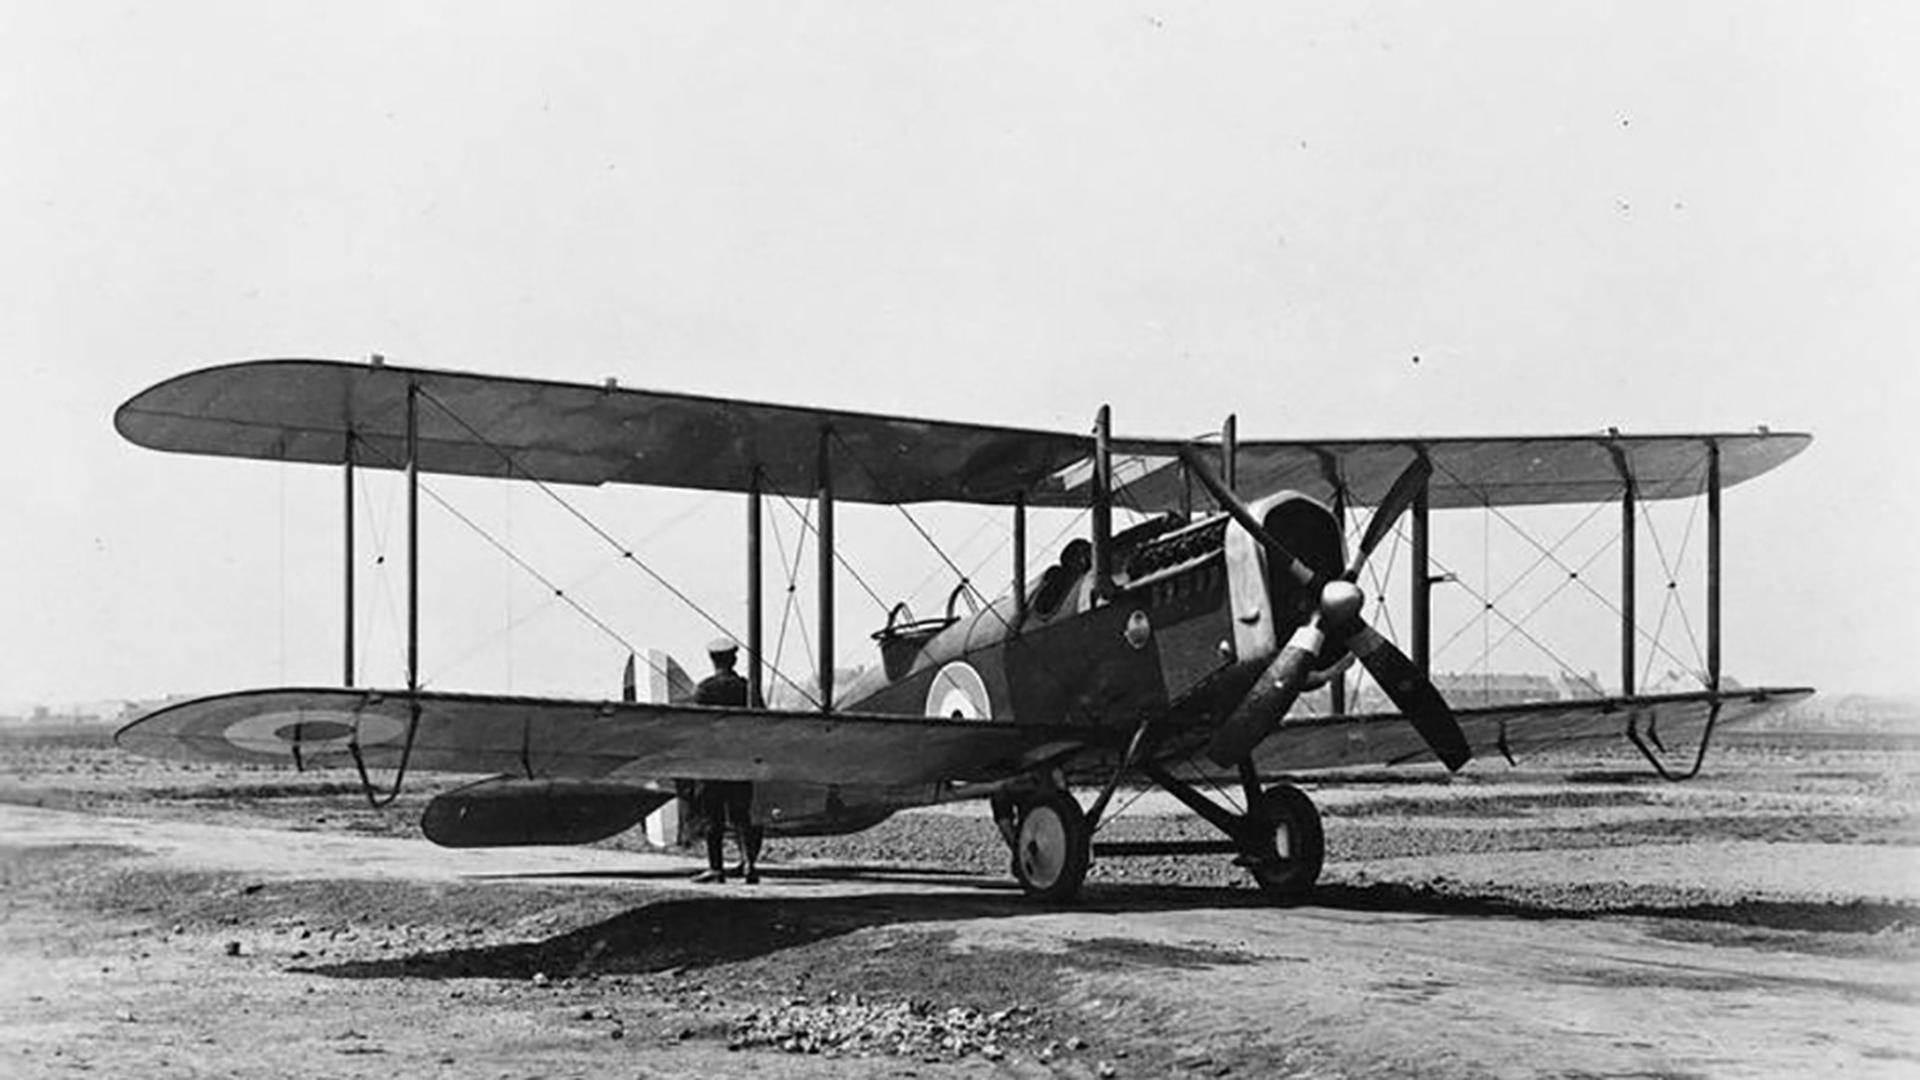 Des Airco DH4 britanniques, des bombardiers légers, ont largué des explosifs sur Bonneweg lors du bombardement du Jeudi saint 1918. Ces avions faisaient partie de la flotte du Royal Flying Corps depuis 1916. 